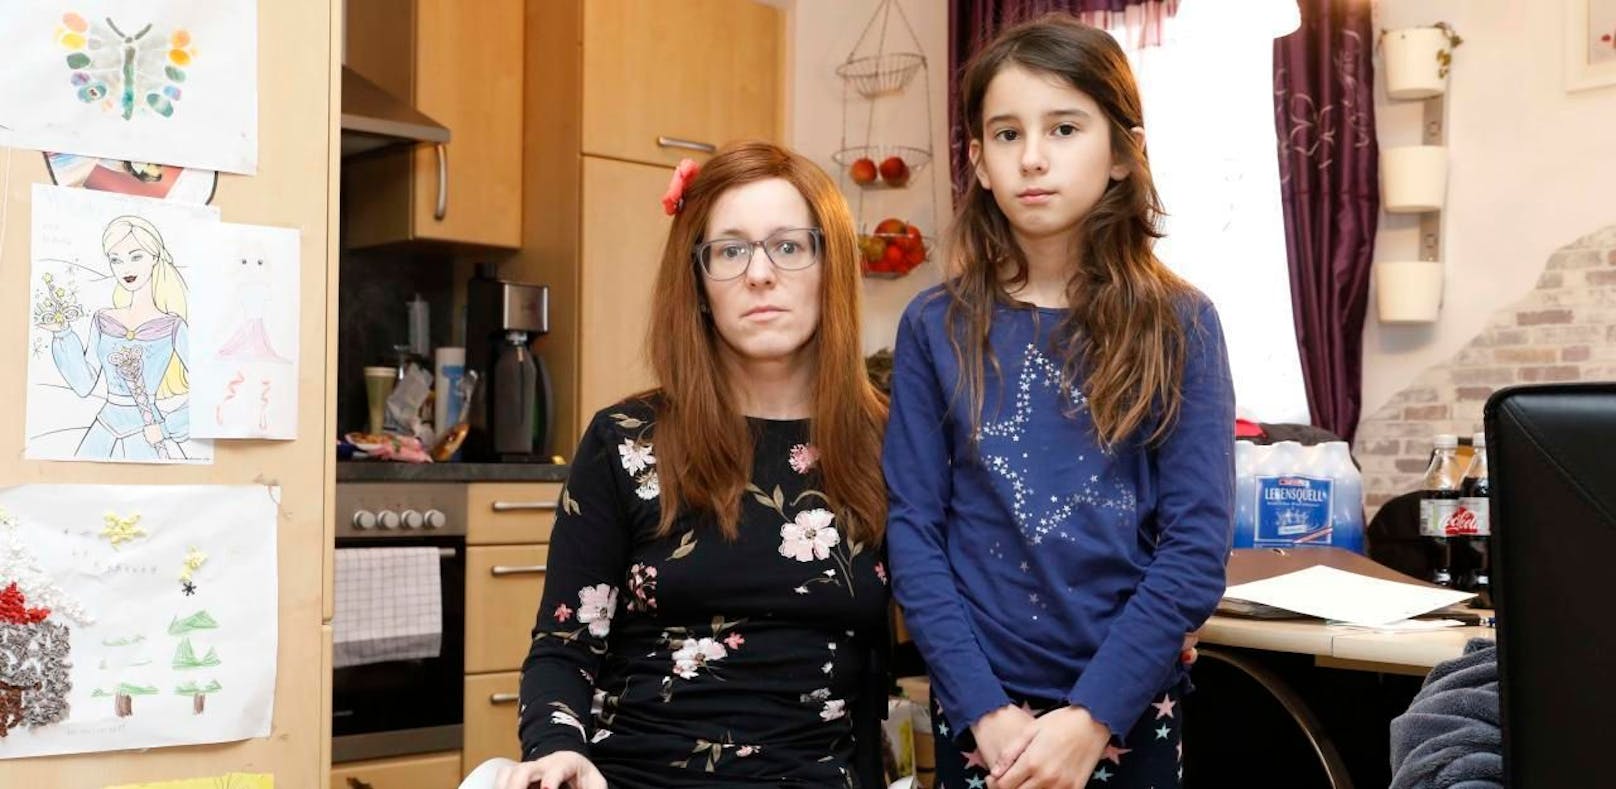 Seit Monaten warten Tanja K. und ihre Tochter aufs Pflegegeld. Sie ist nicht die einzige Betroffene: Mehr als 1.100 Oberösterreicher wandten sich wegen Problemen mit dem Pflegegeld an die AK.